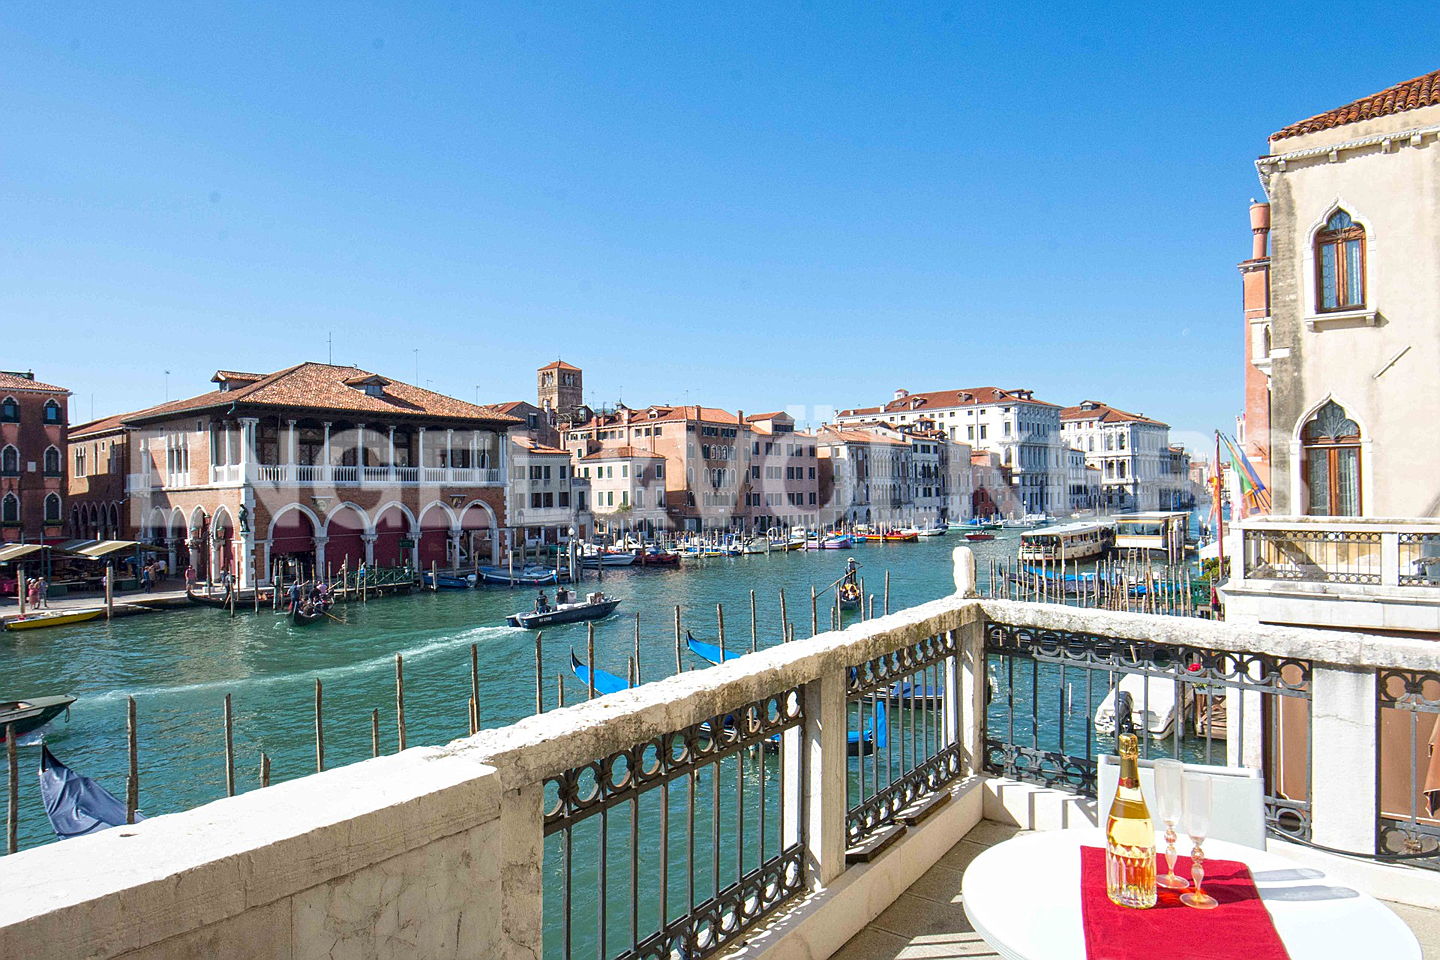  Venice
- terrazza-sul-canal-grande.jpg